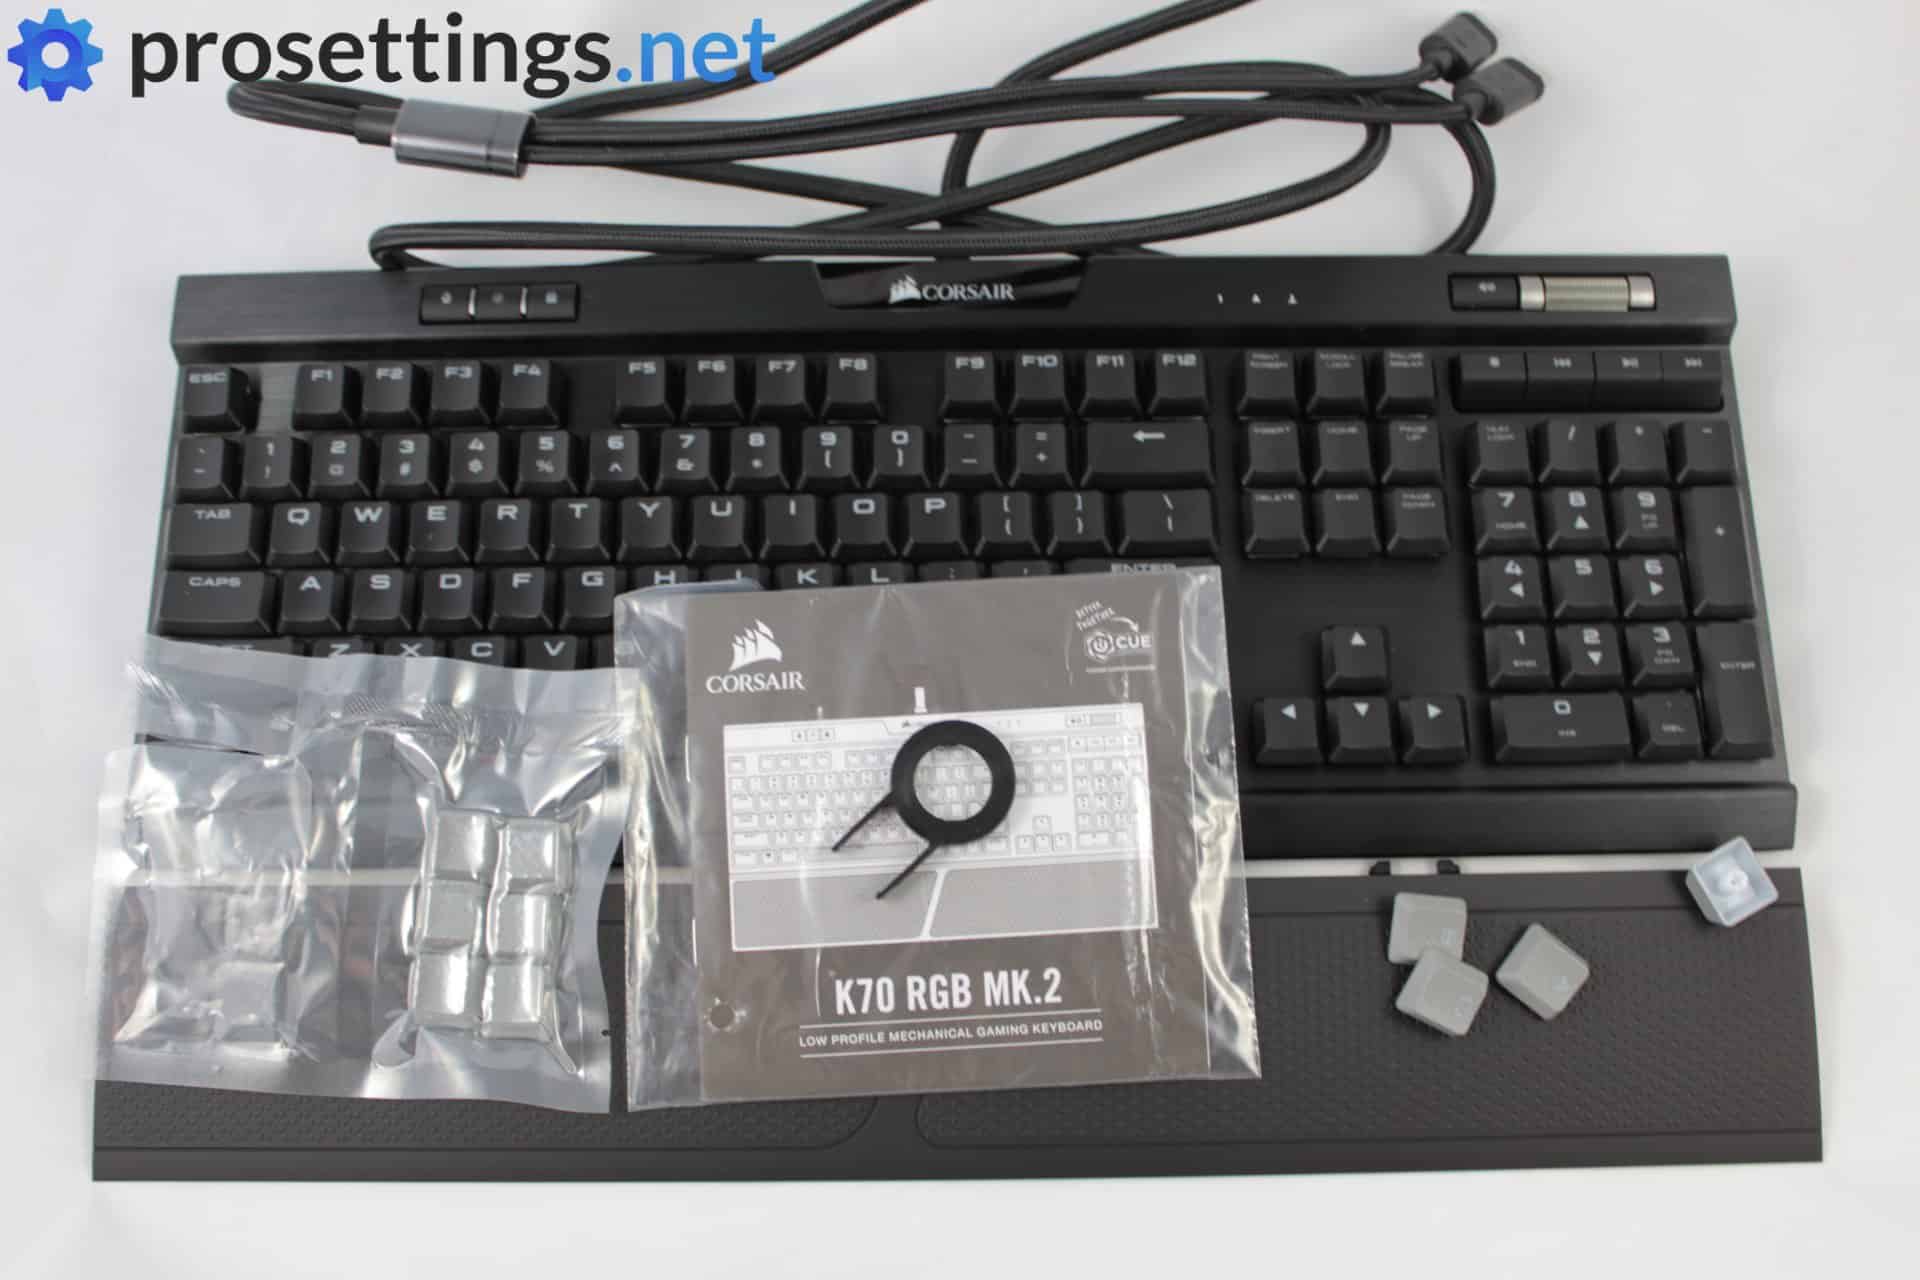 Corsair K70 RGB Mk.2 Low Profile Keyboard Review Packaging